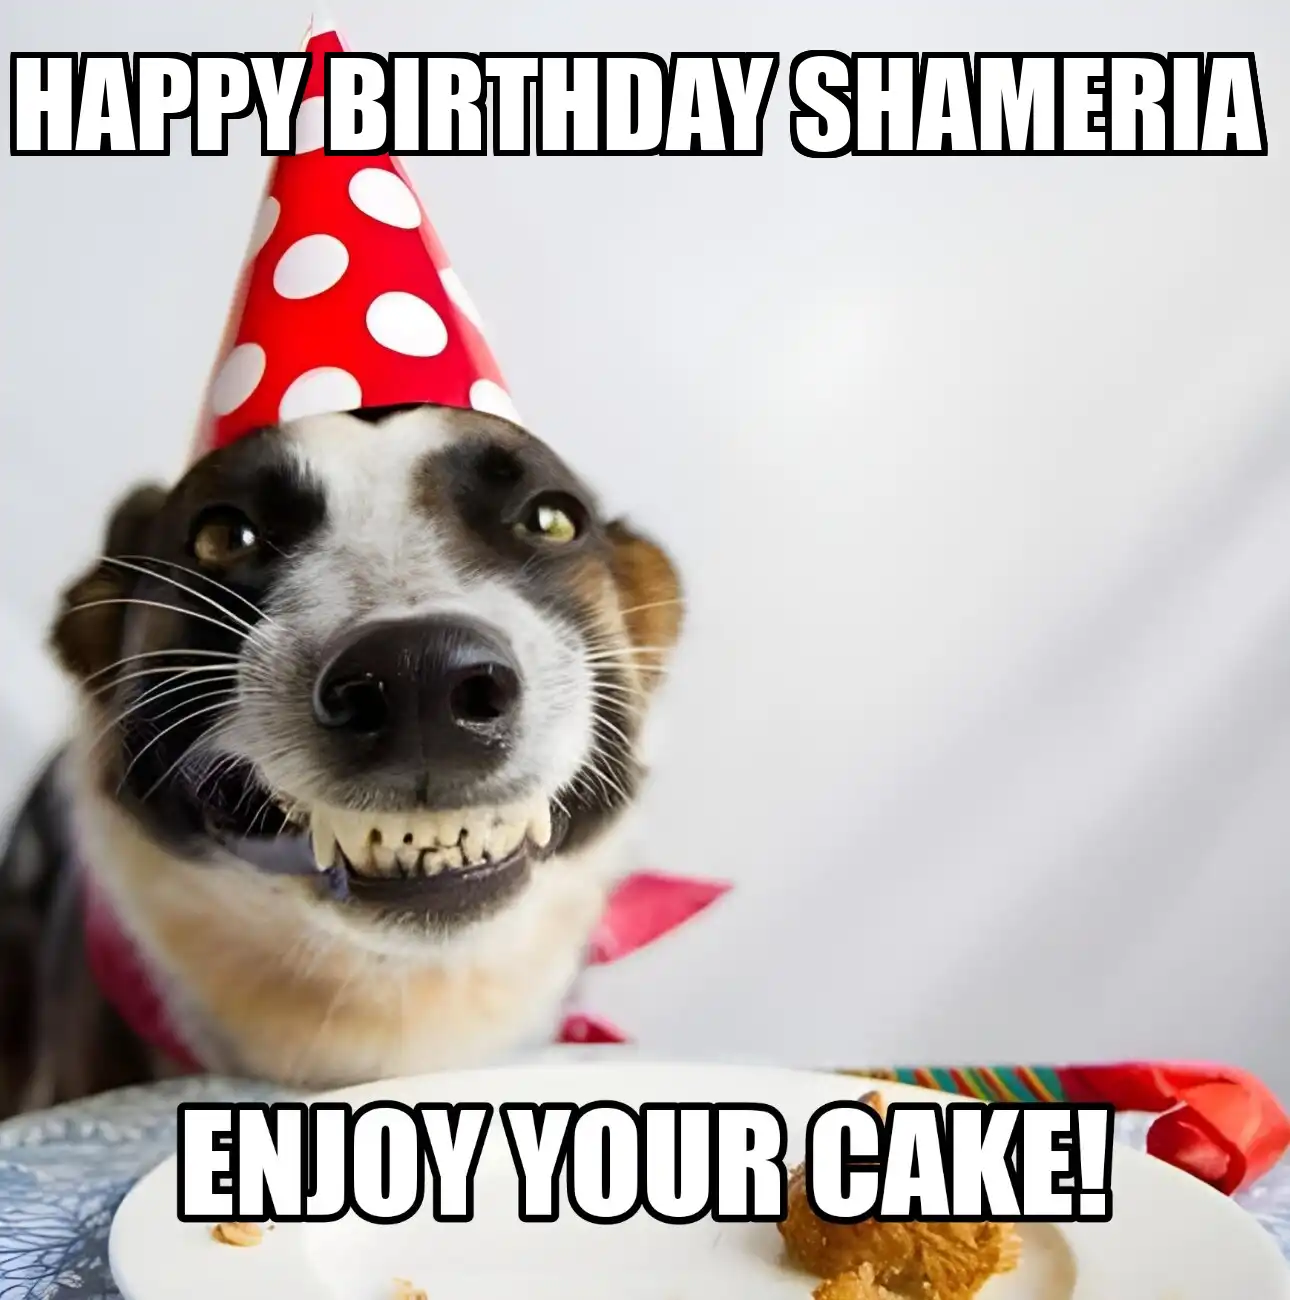 Happy Birthday Shameria Enjoy Your Cake Dog Meme